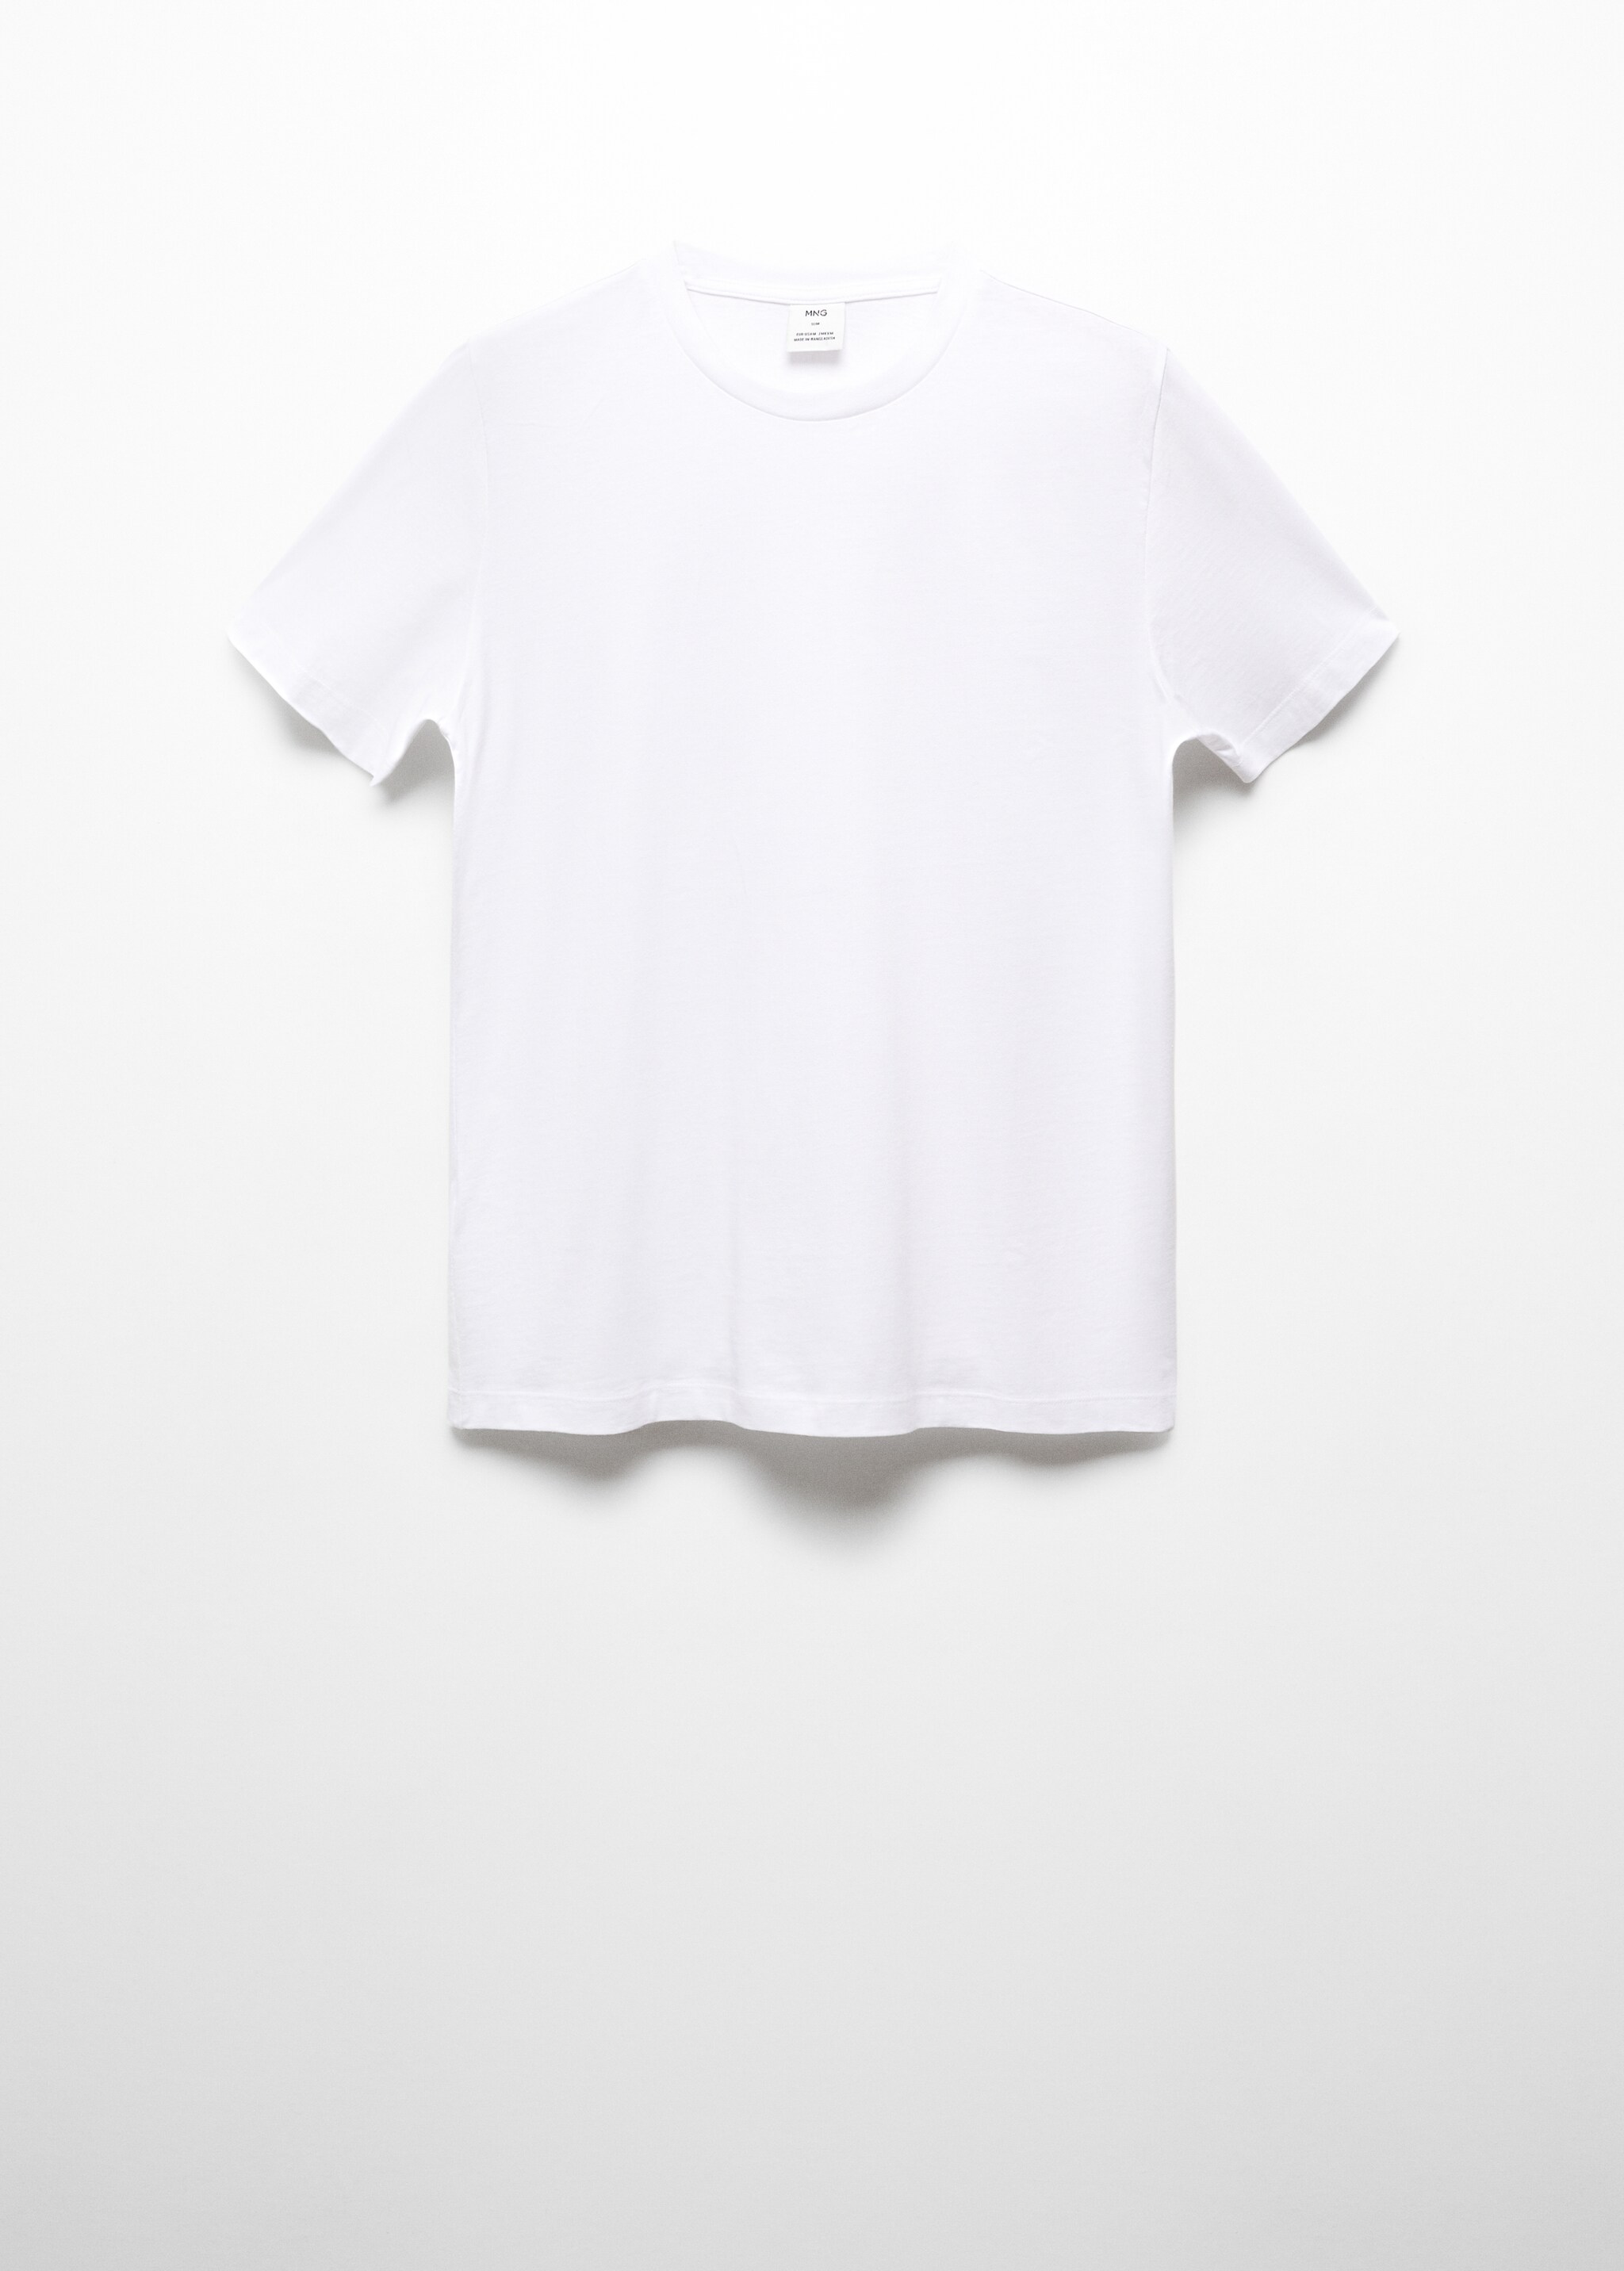 T-shirt essentiel coton stretch - Article sans modèle